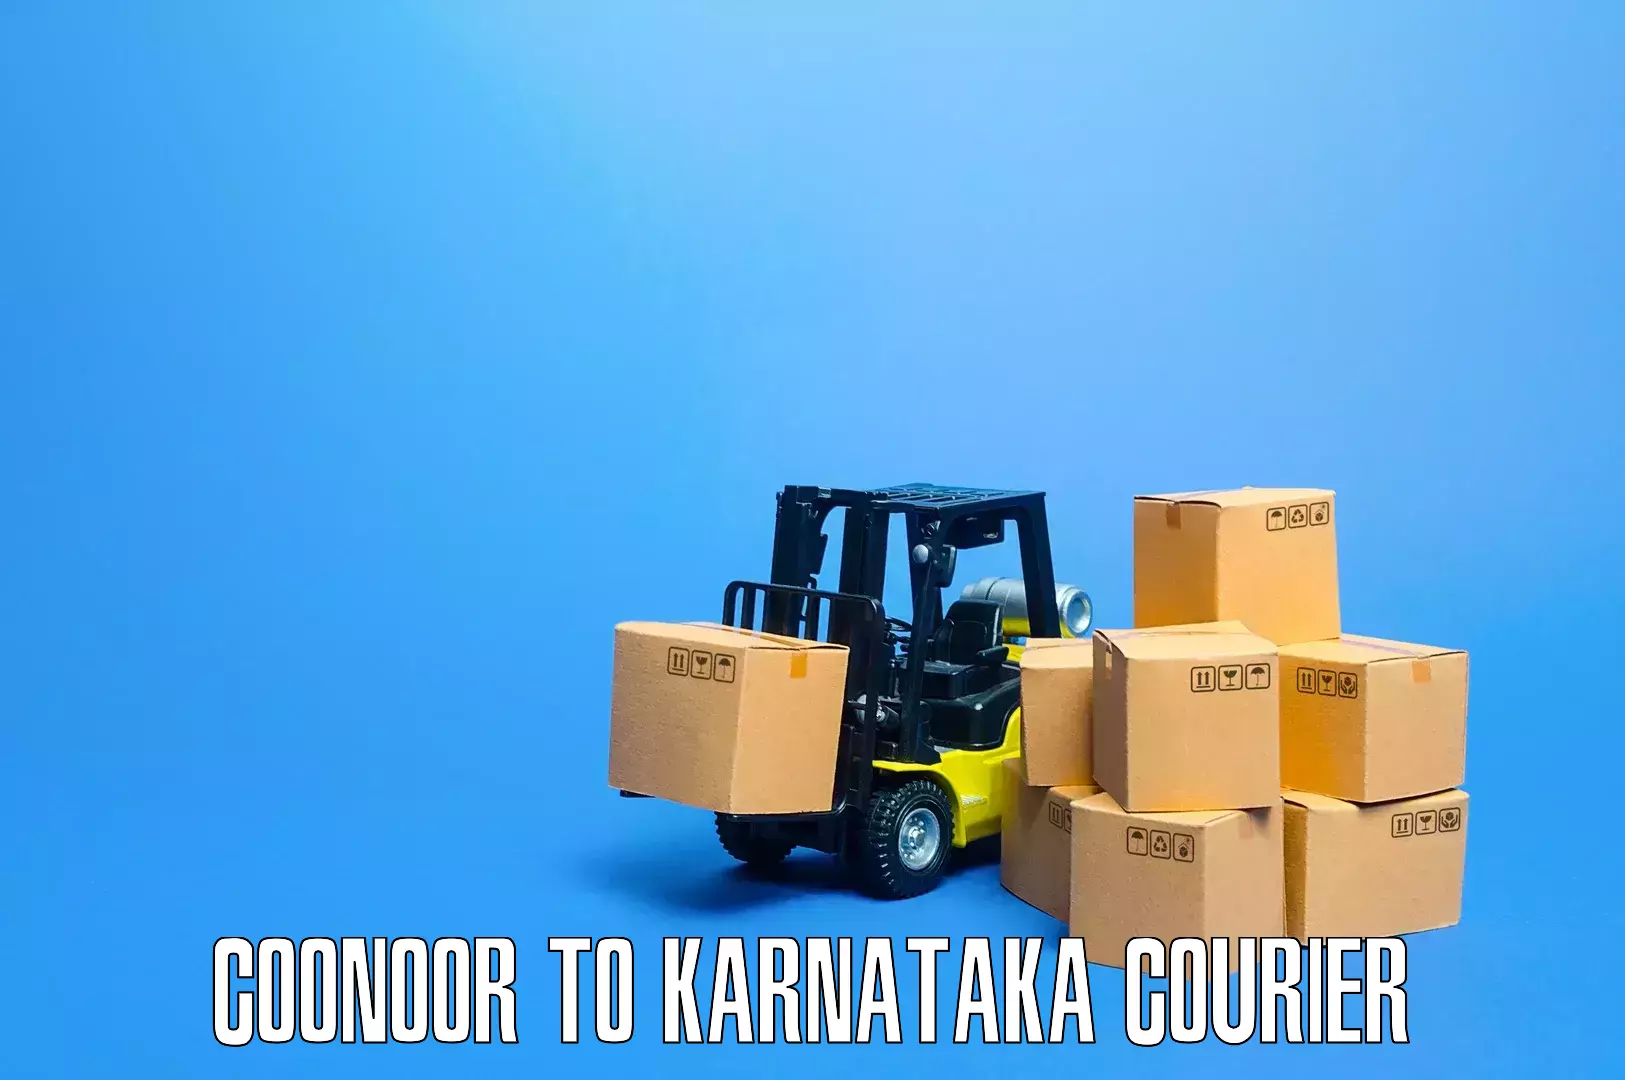 Stress-free furniture moving in Coonoor to Karnataka